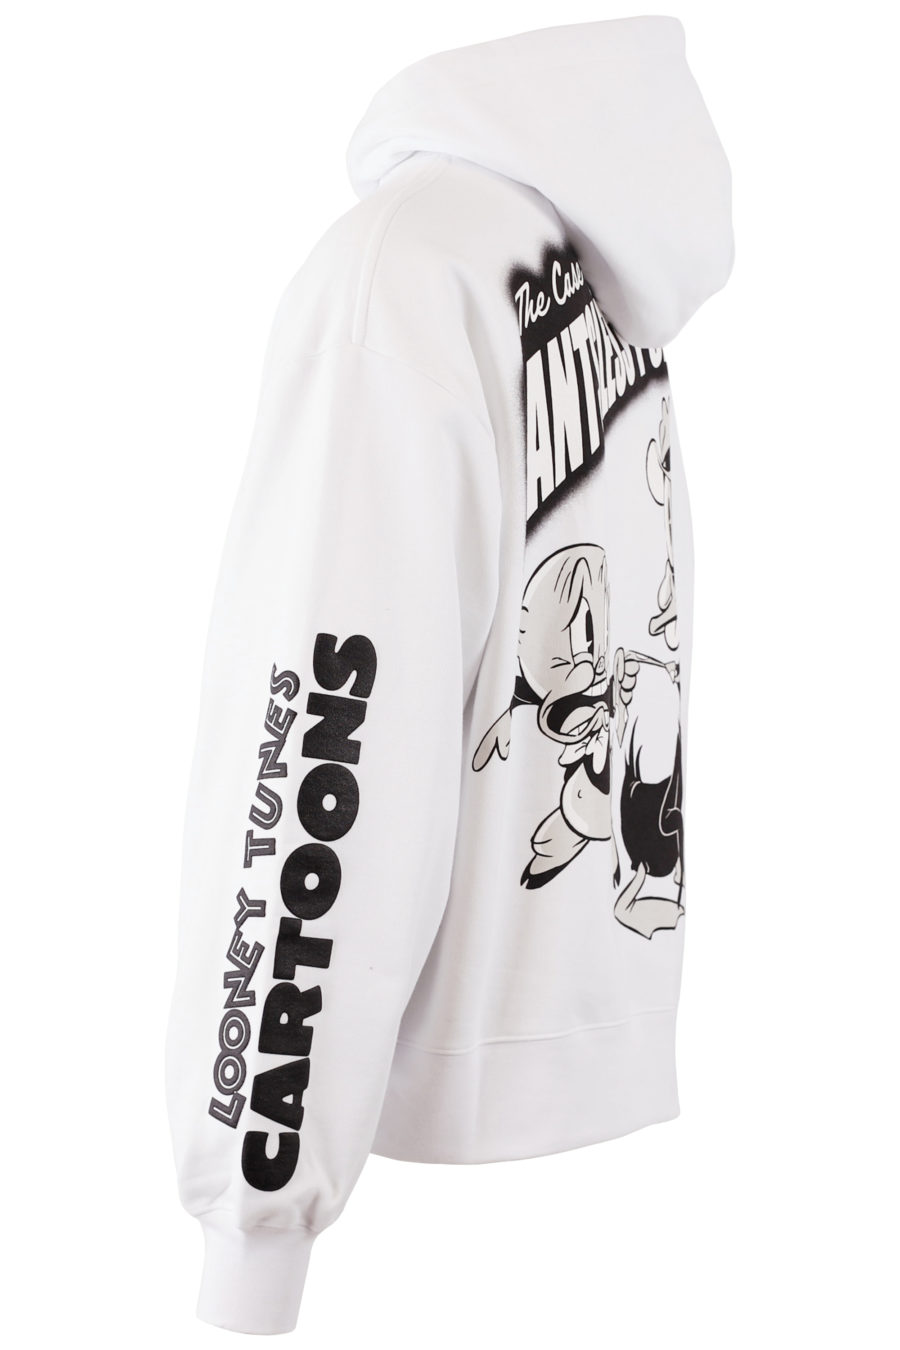 Weißes Kapuzensweatshirt mit Looney Tunes Grafikdruck - IMG 7680 copy